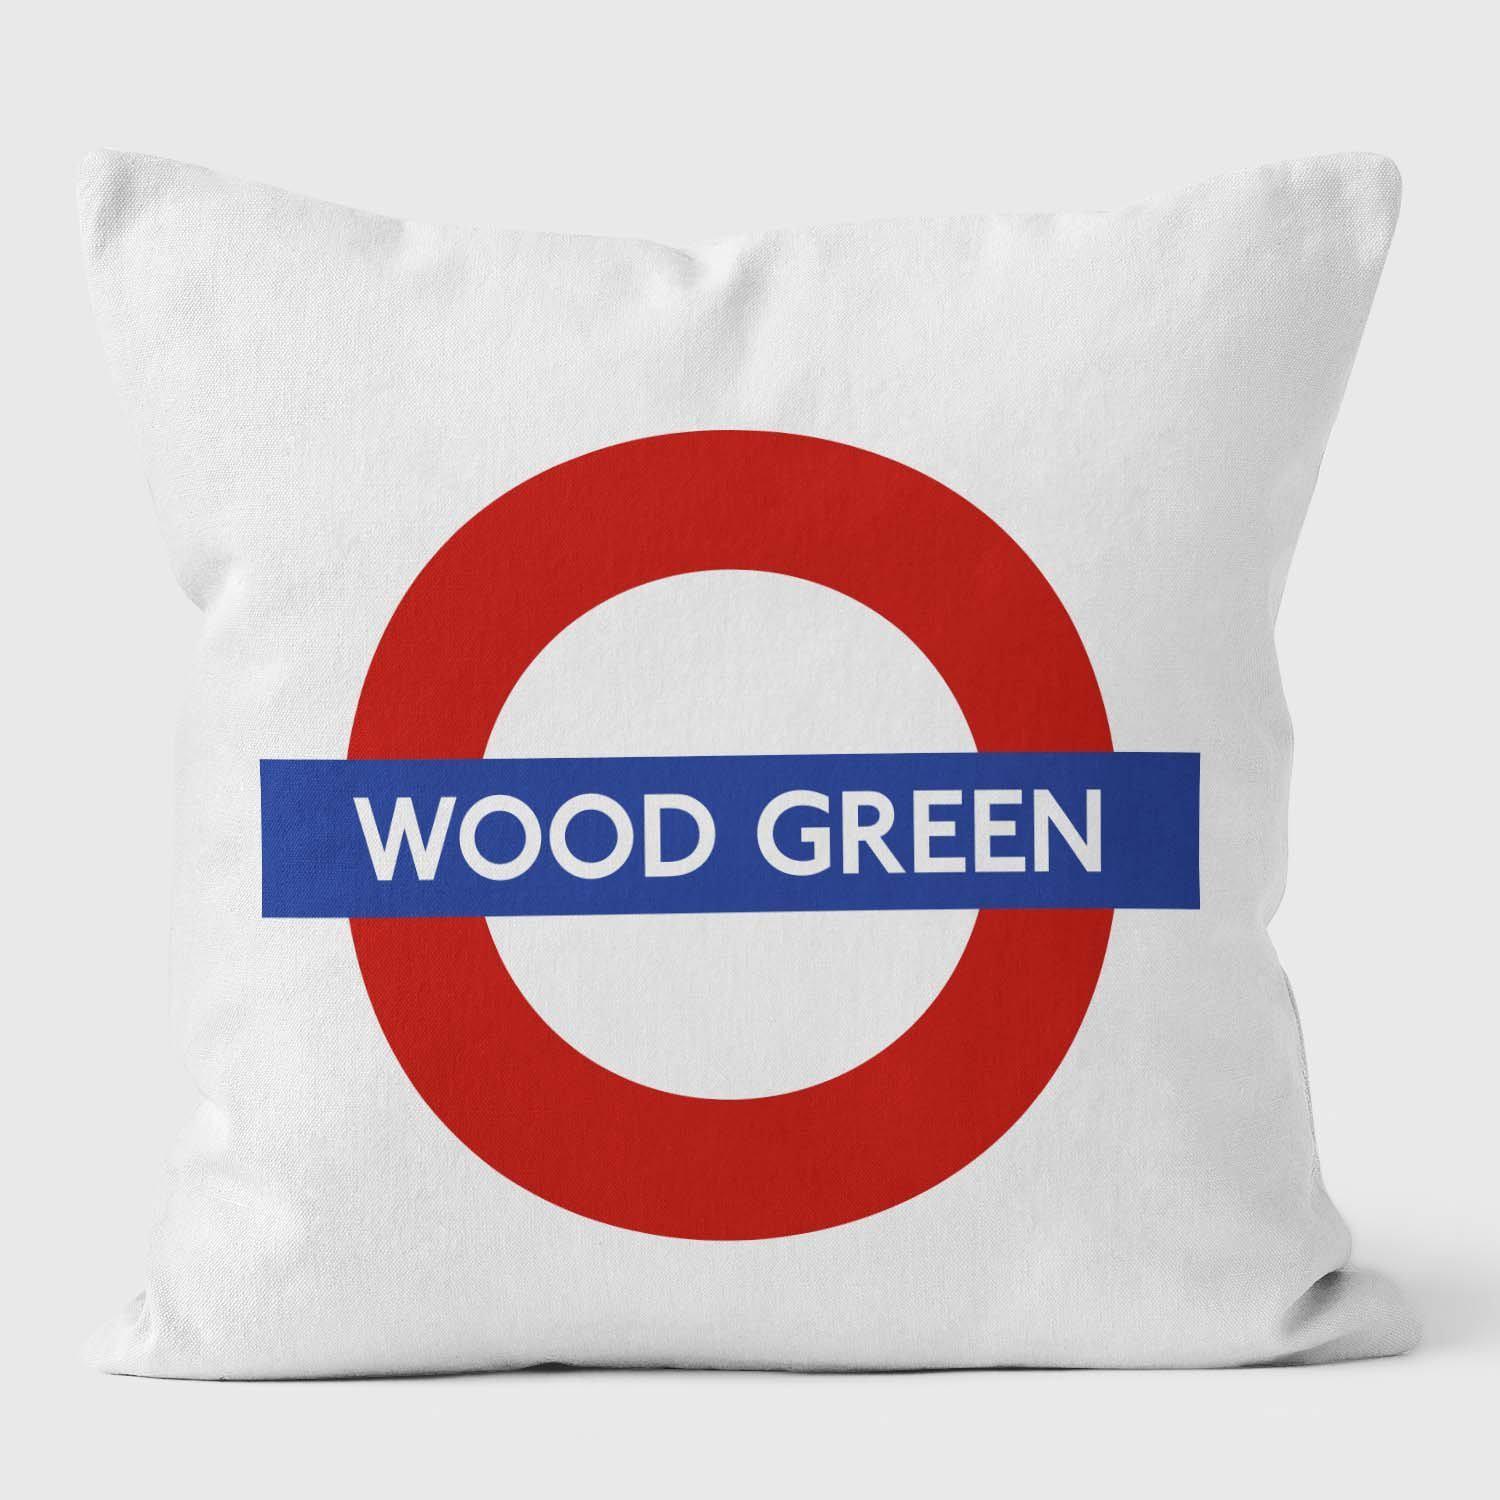 Wood Green London Underground Tube Station Roundel Cushion - Handmade Cushions UK - WeLoveCushions